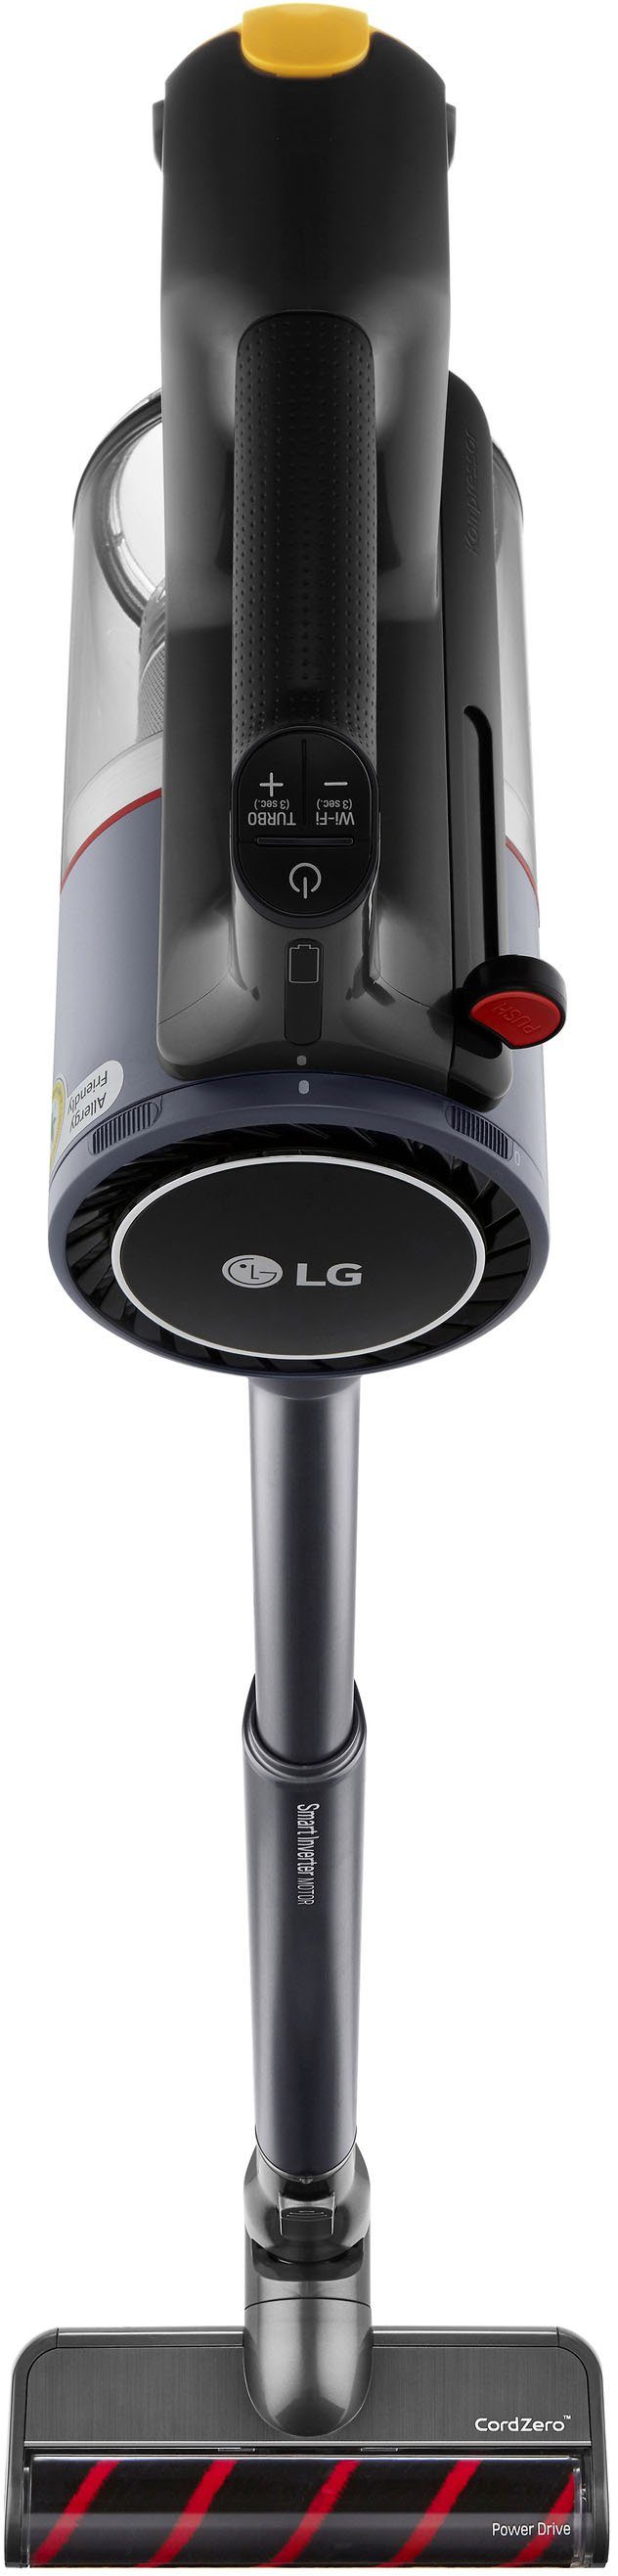 LG Akku-Hand-und beutellos A9K-PRO1G, Stielstaubsauger